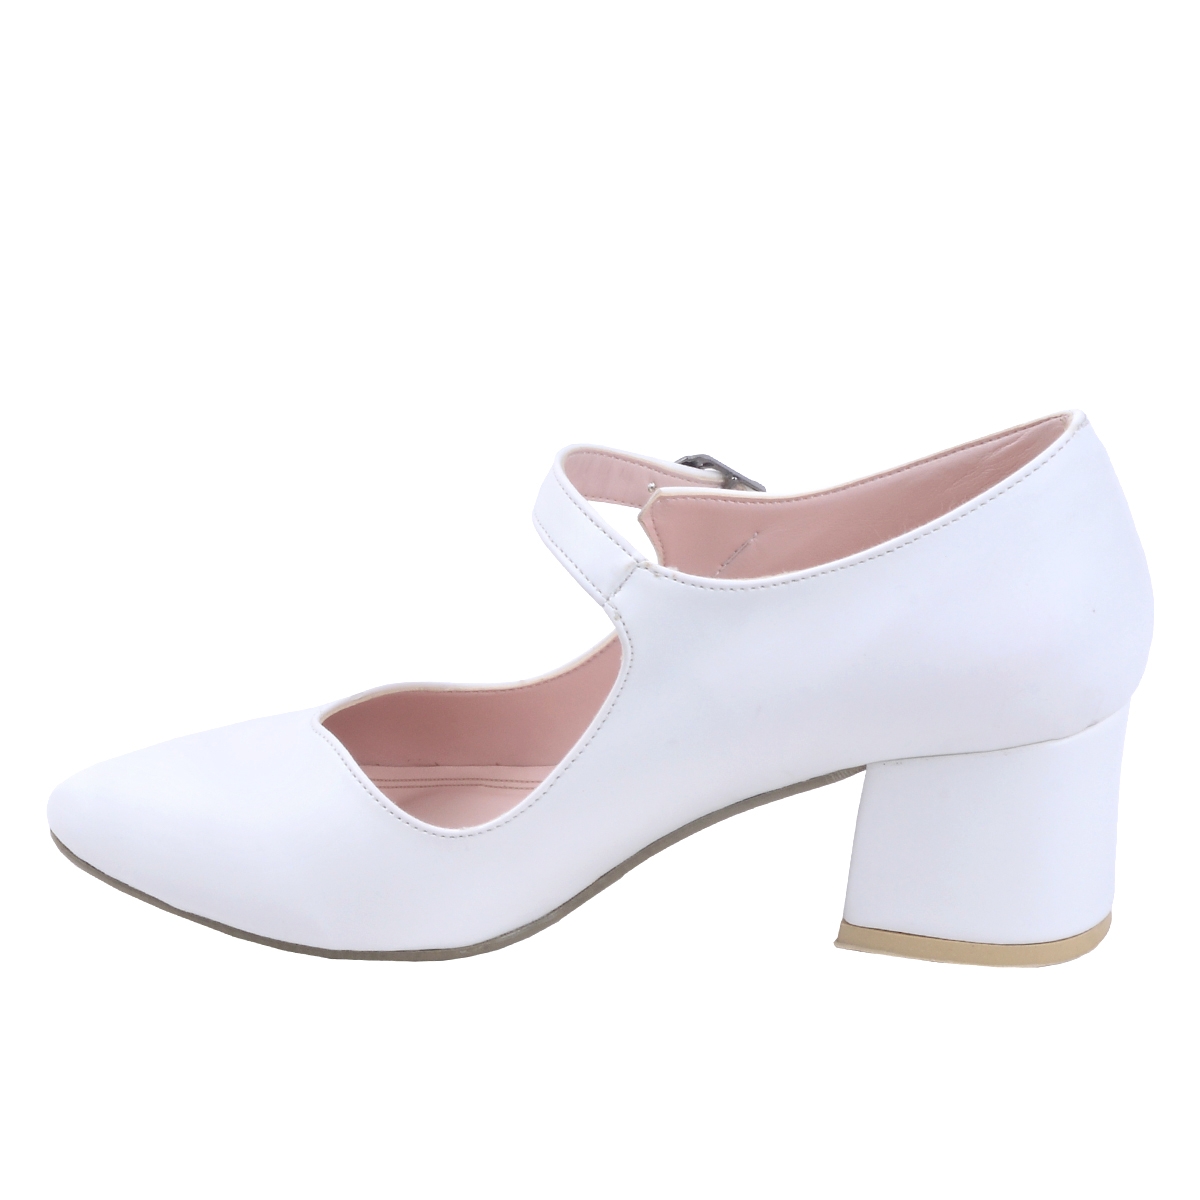 Flo 97544-318 Cilt 5 Cm Topuk Bayan Sandalet Ayakkabı Beyaz. 4